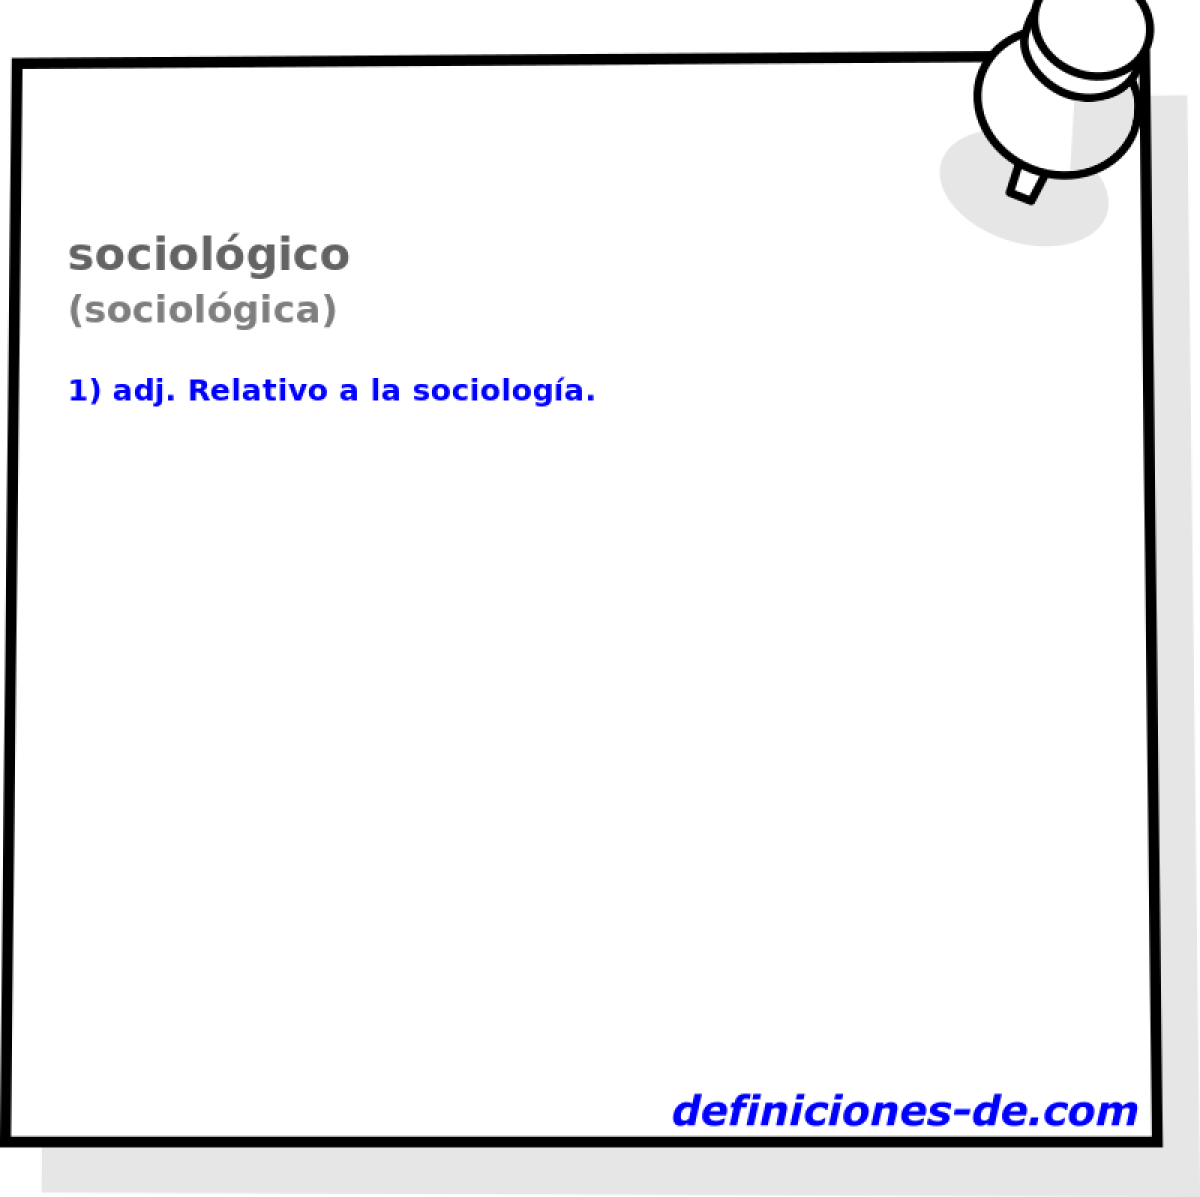 sociolgico (sociolgica)